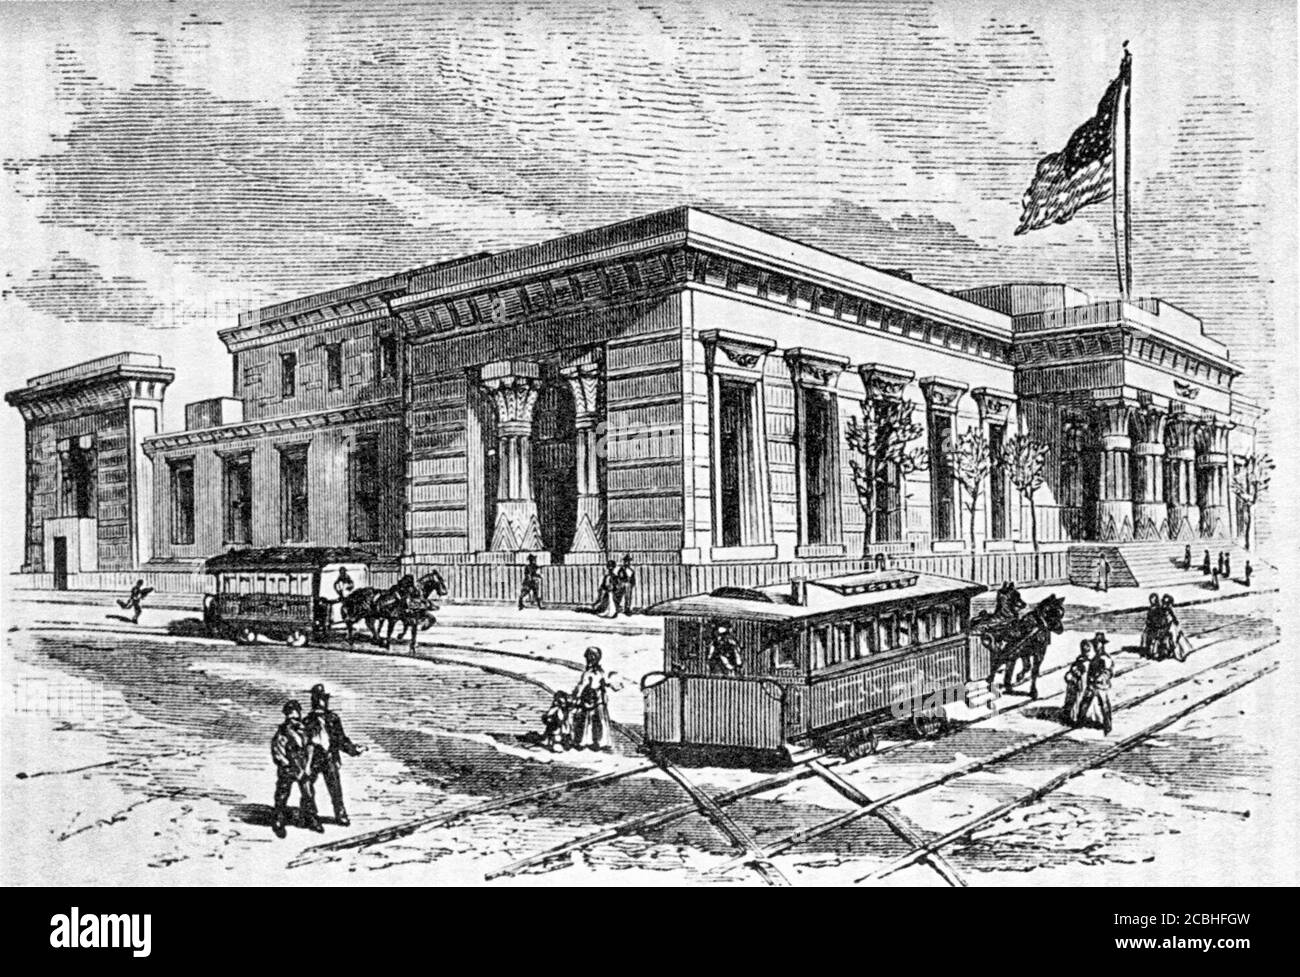 The Halls of Justice (également appelés Tombs) sur Center Street, New York City, 1870 Banque D'Images